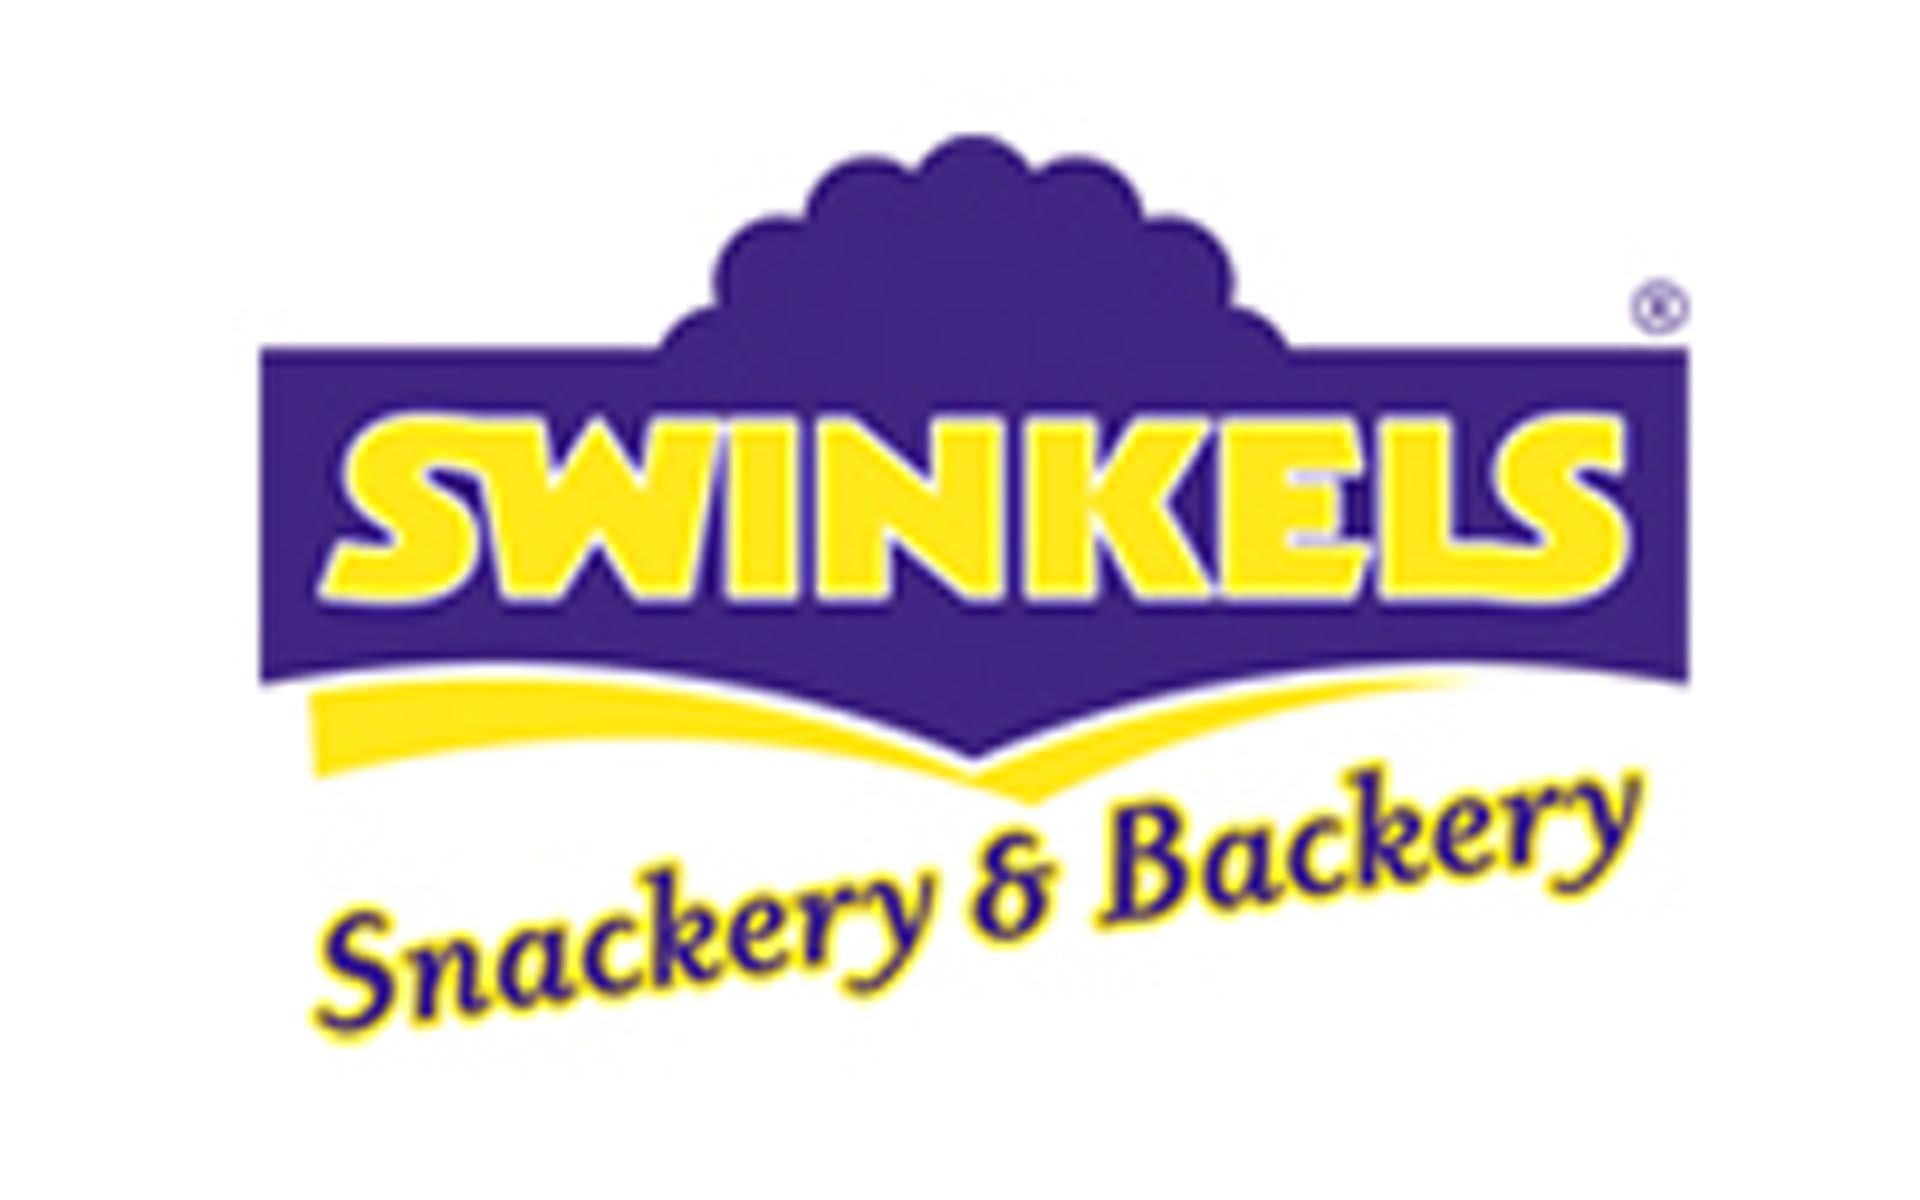 Acquisition Swinkels Snackery & Backery bv